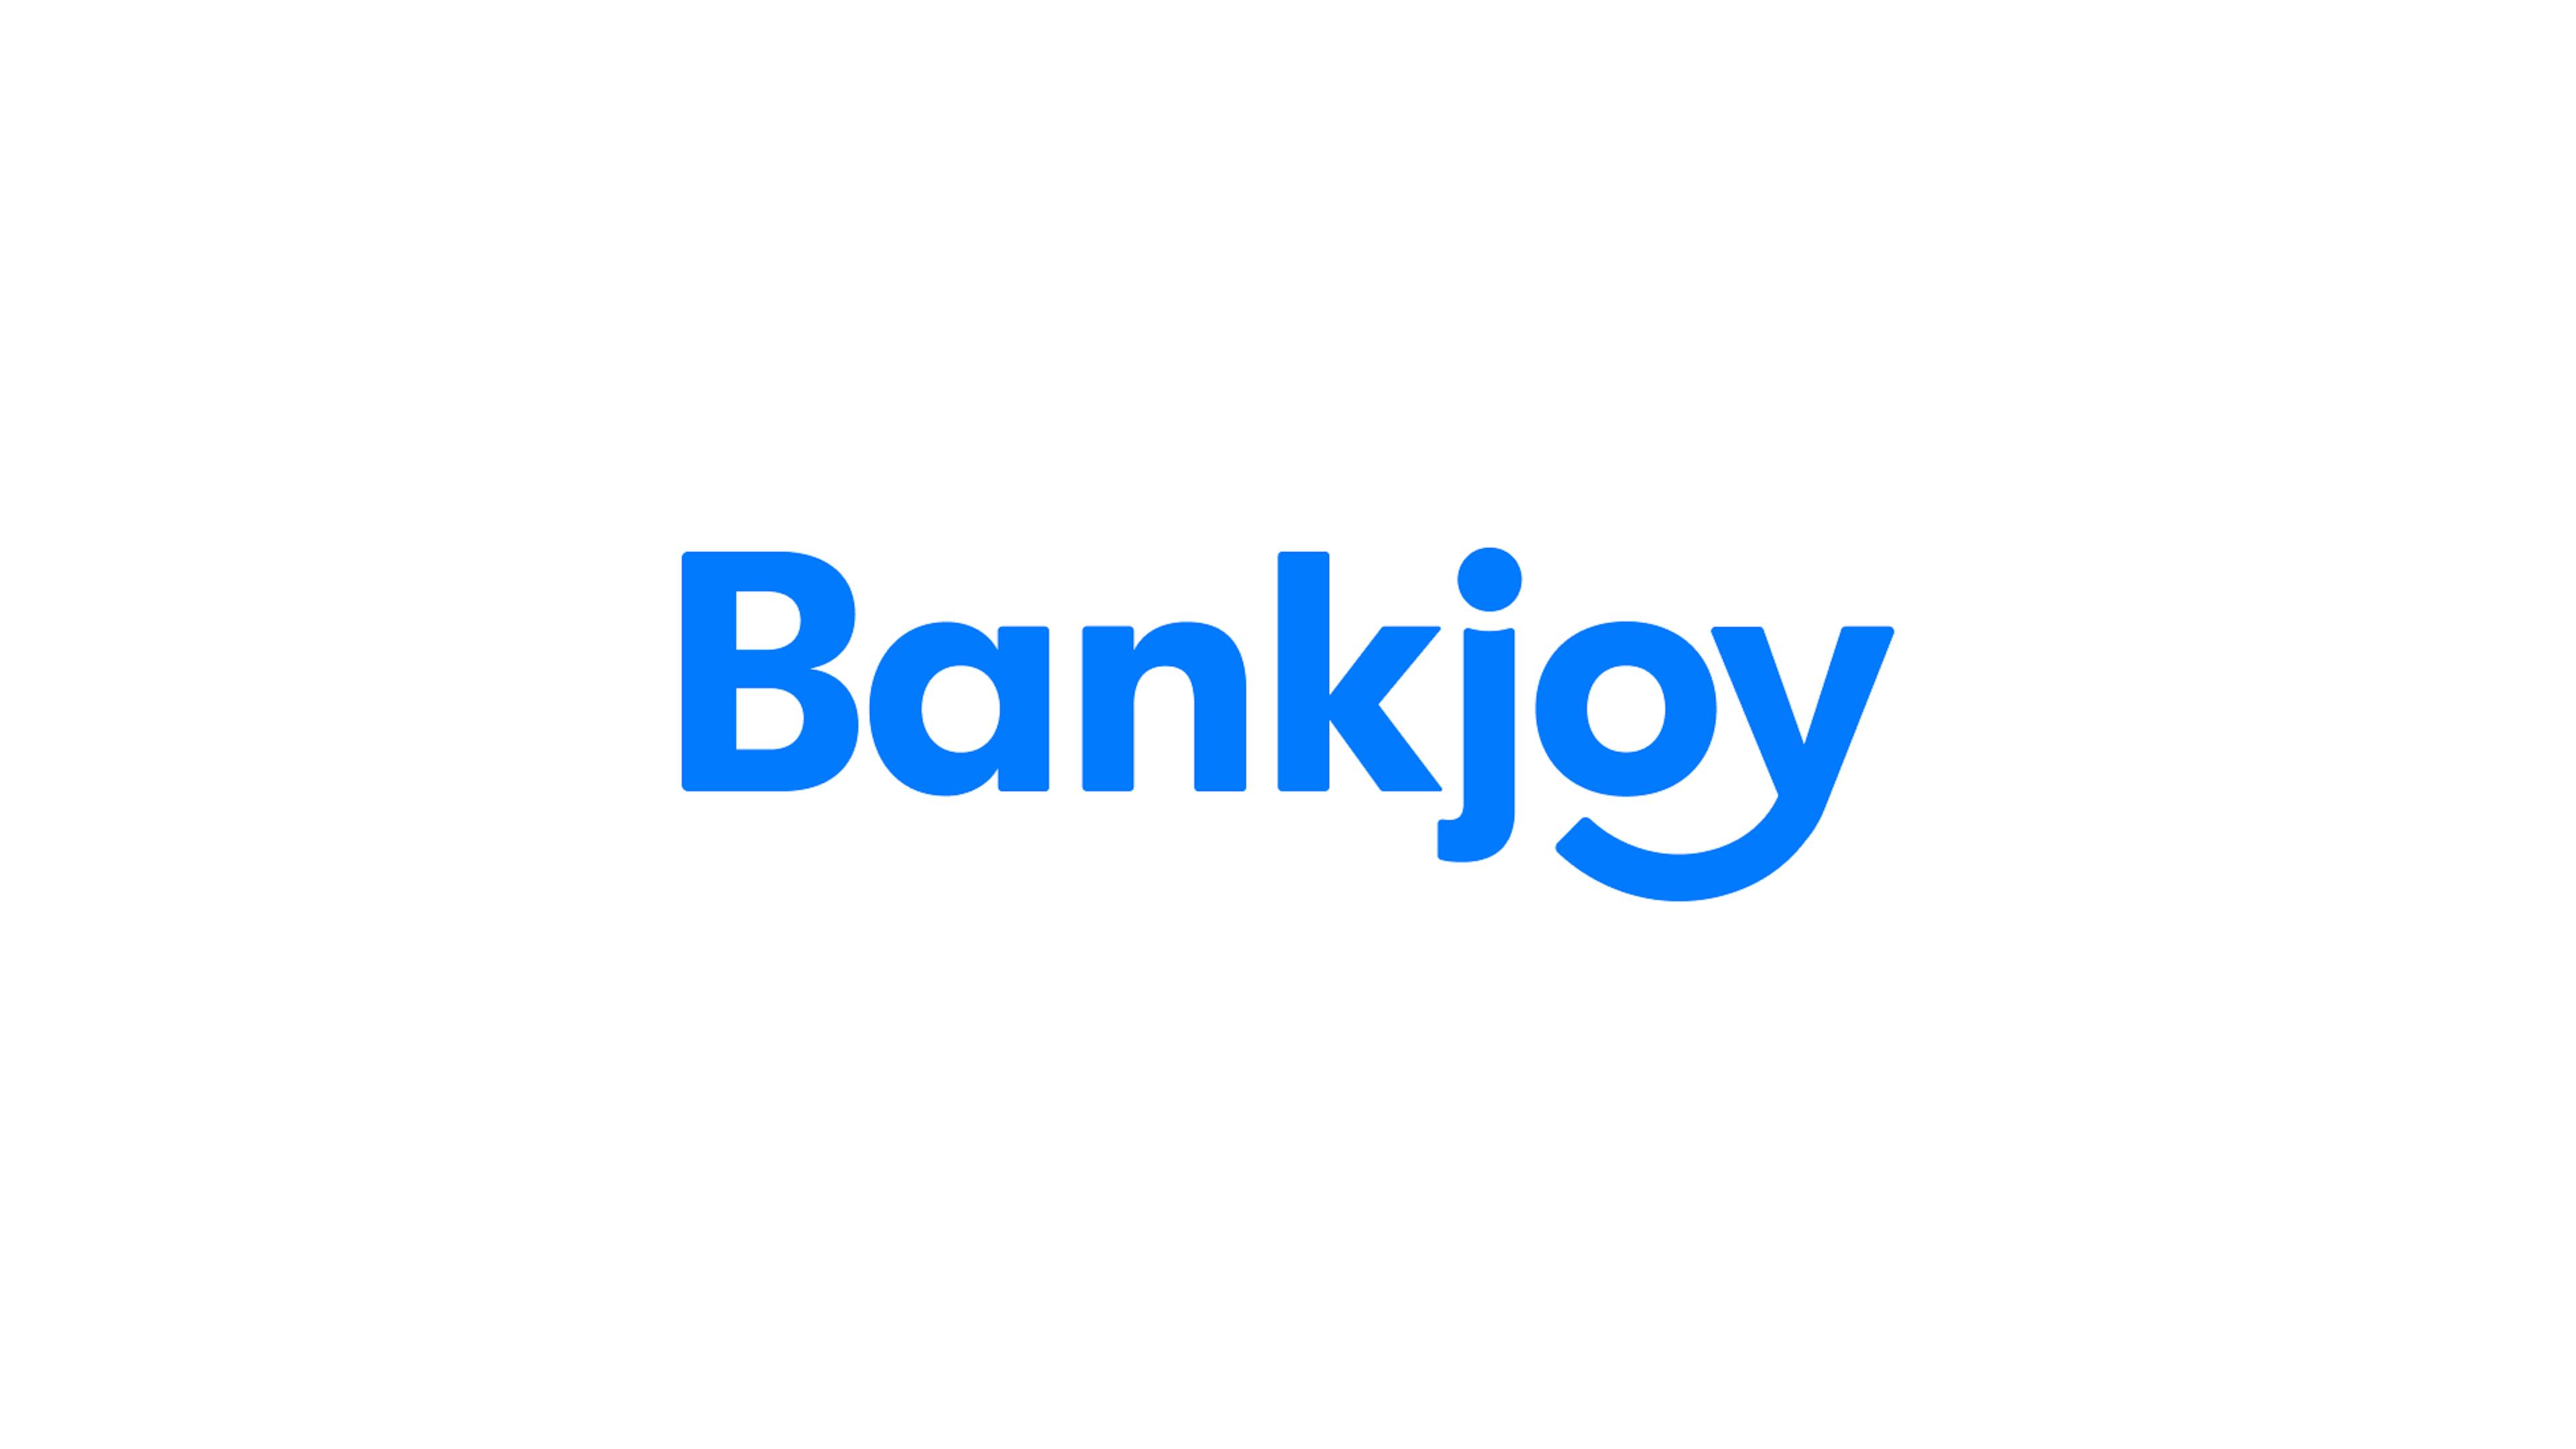 Bankjoy wordmark